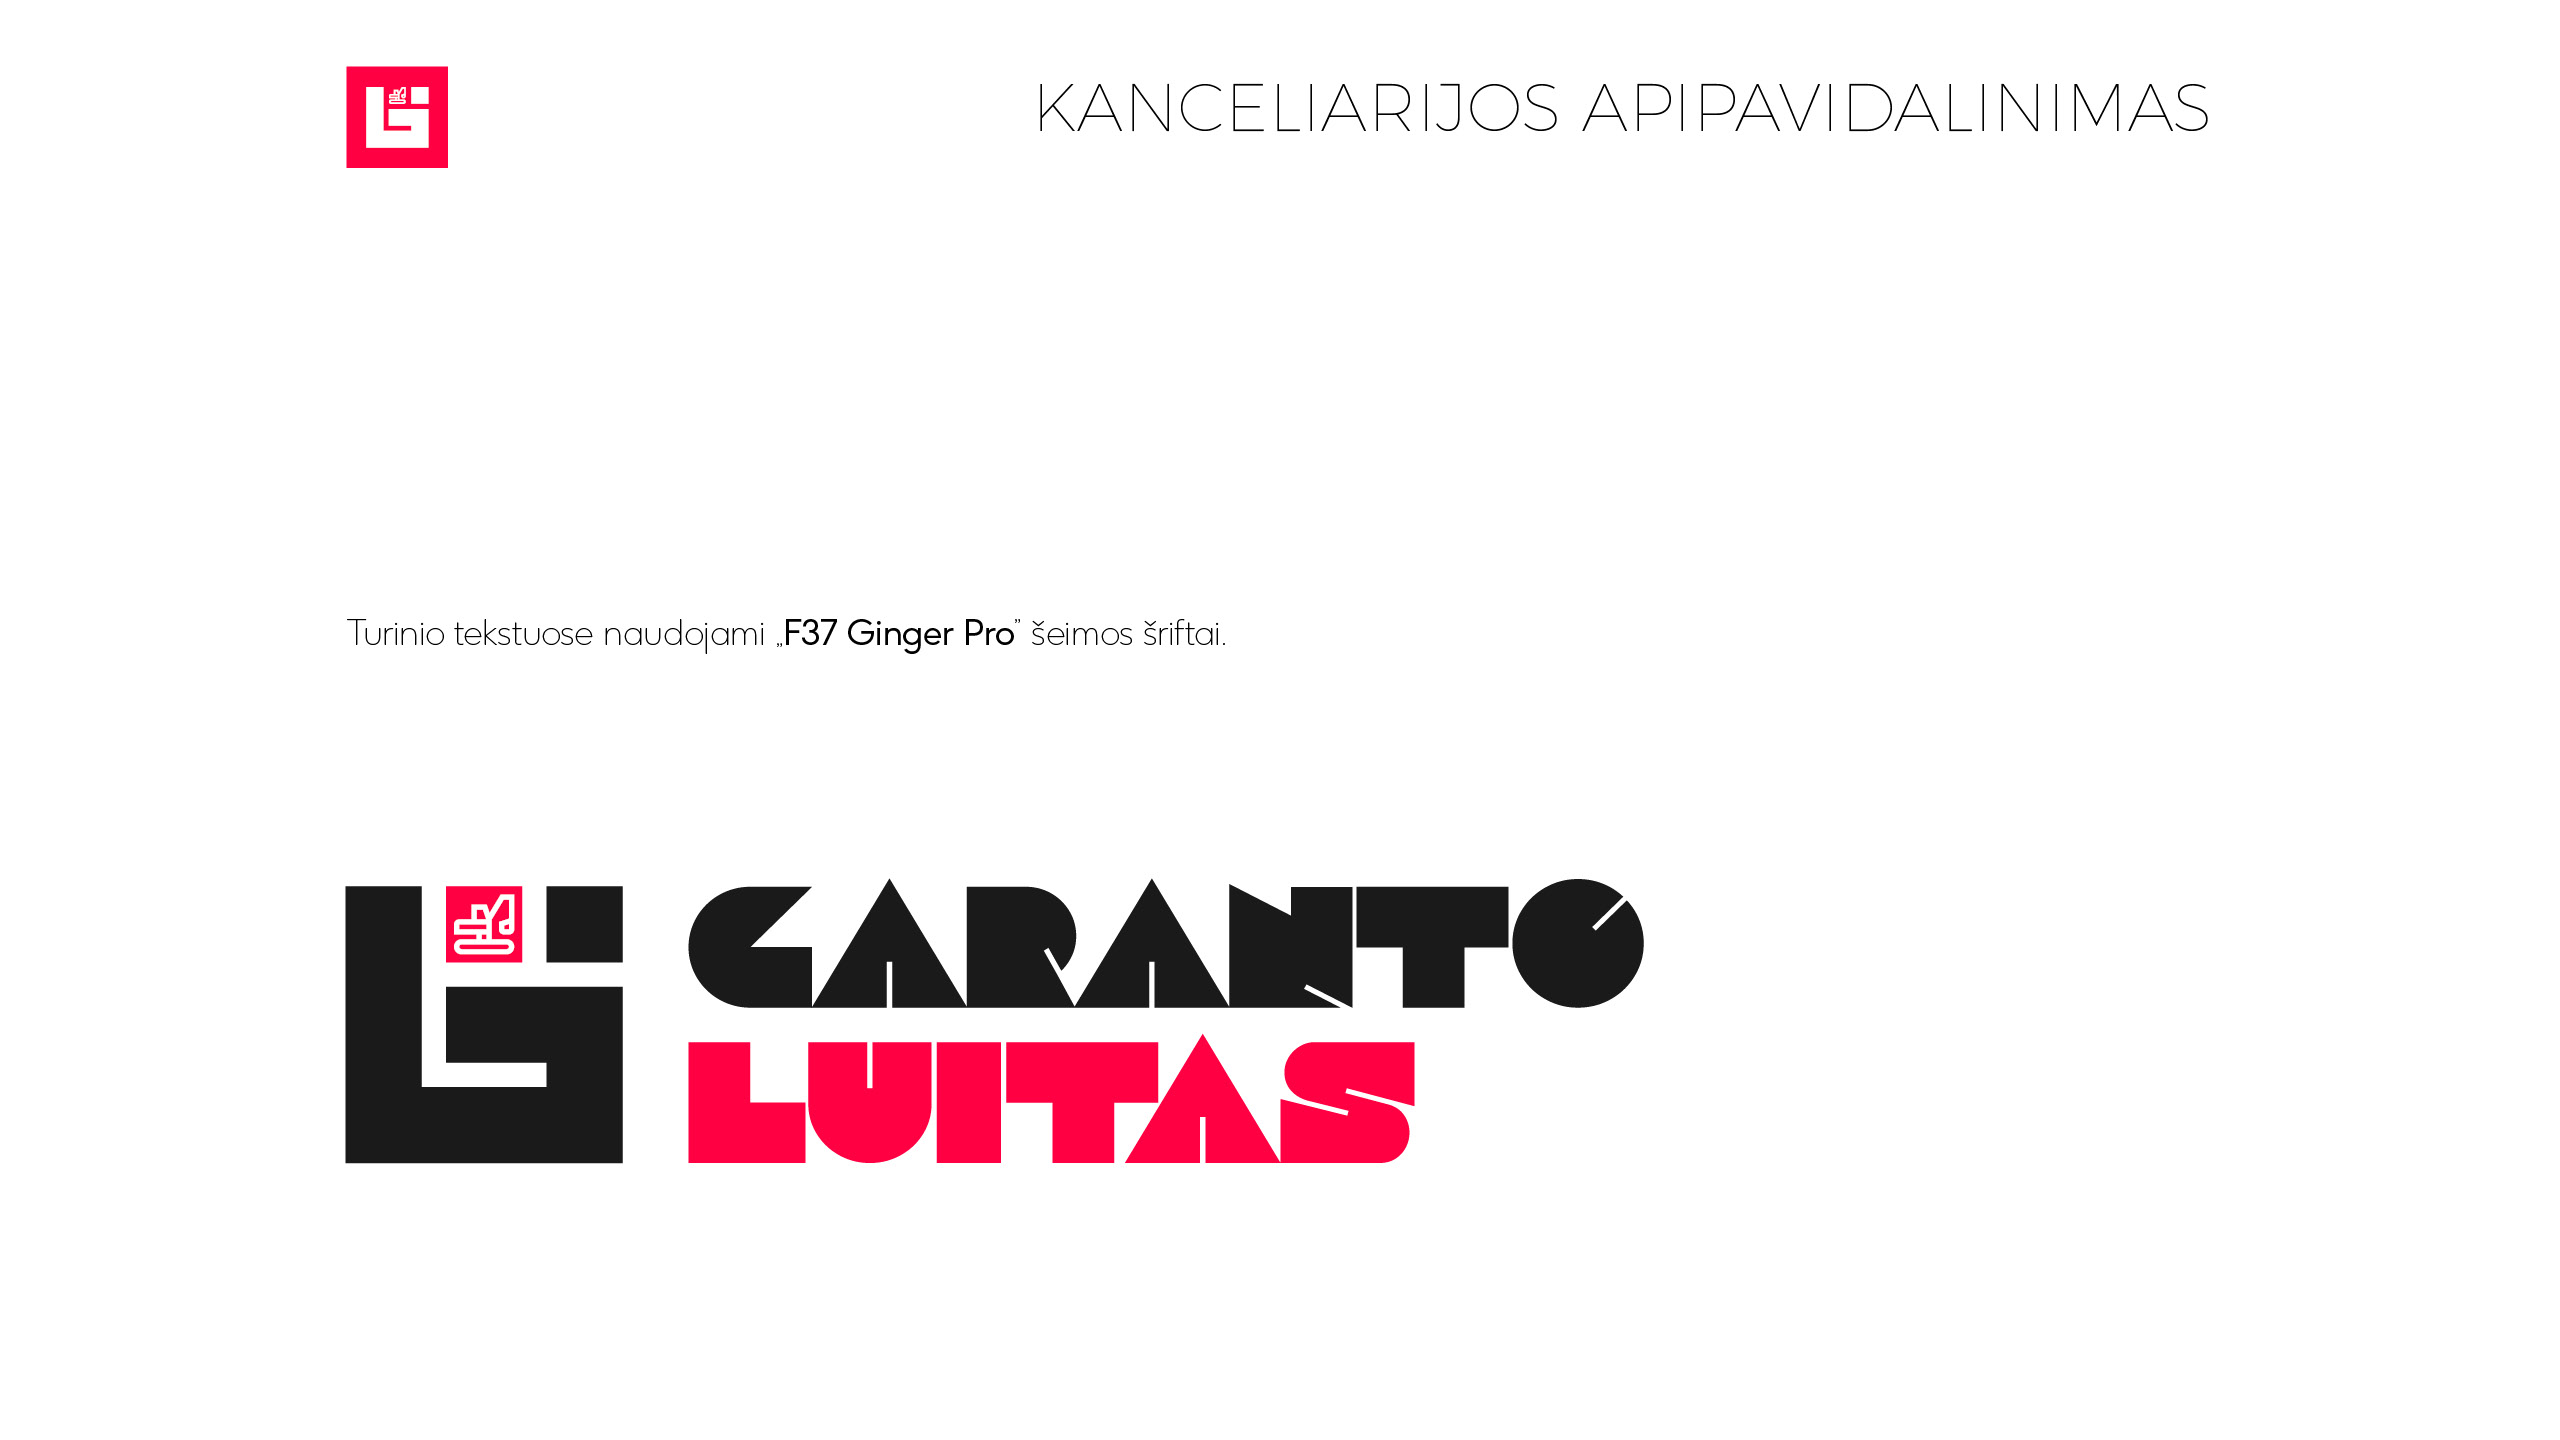 GARANTO LUITAS brandbook 11 Logobou design